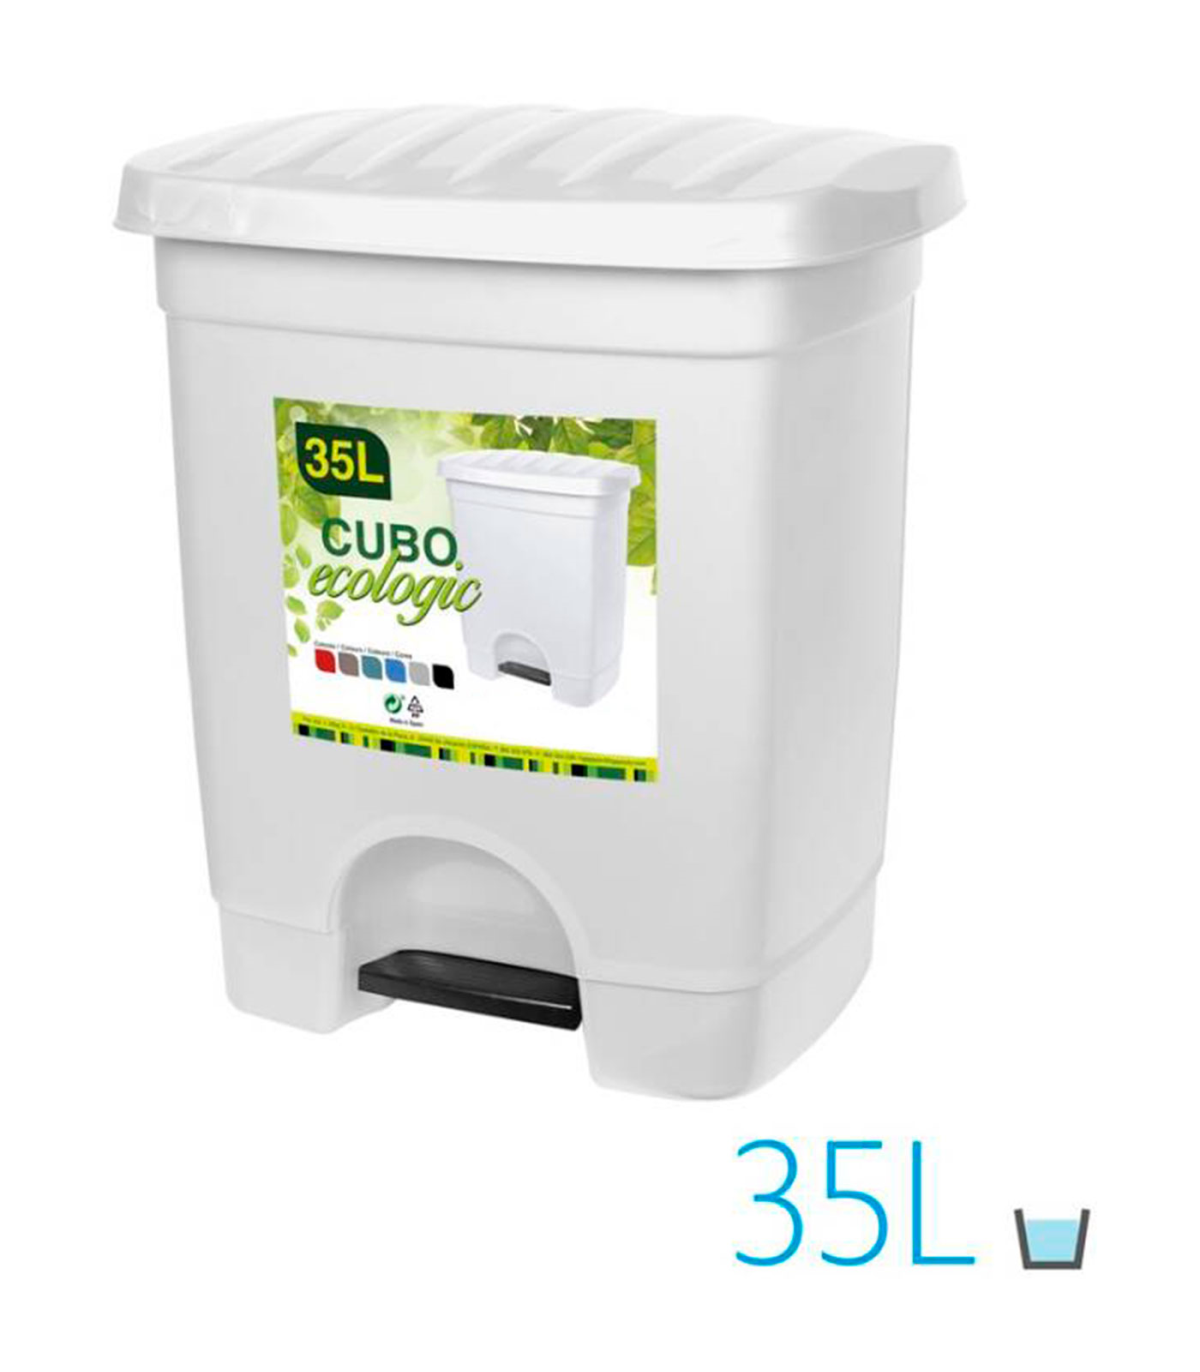 CUBO BASURA C/PEDAL 35L COOKING al por Mayor ≫ Plasticosur